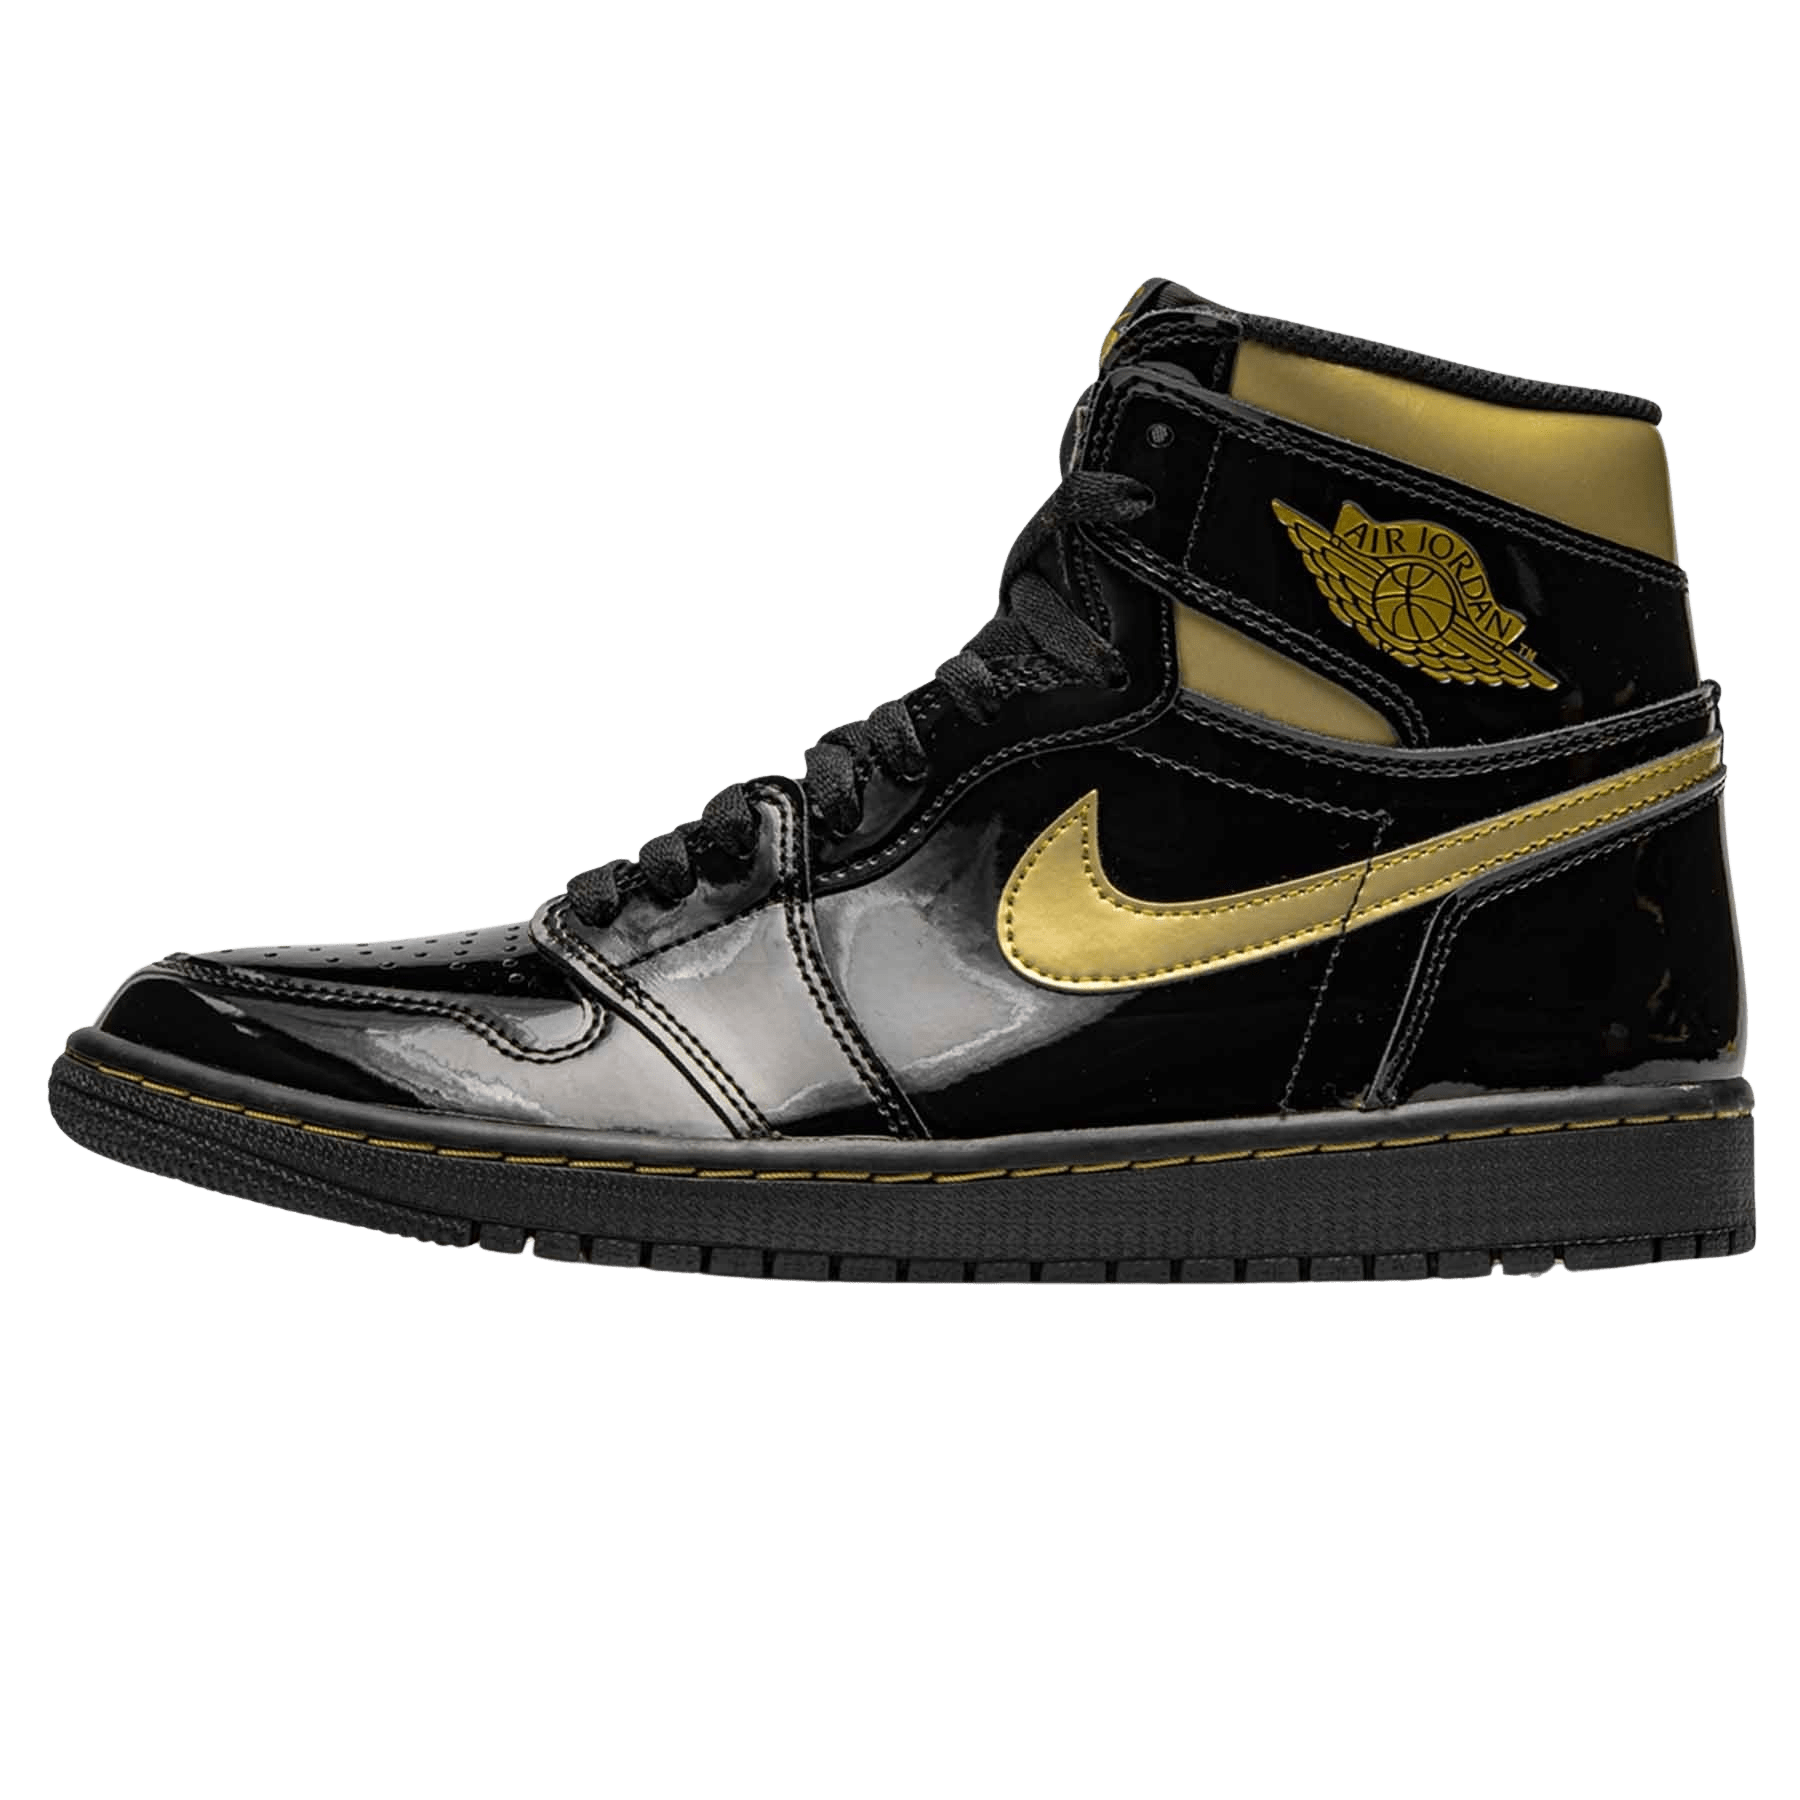 black and gold jordan sneakers